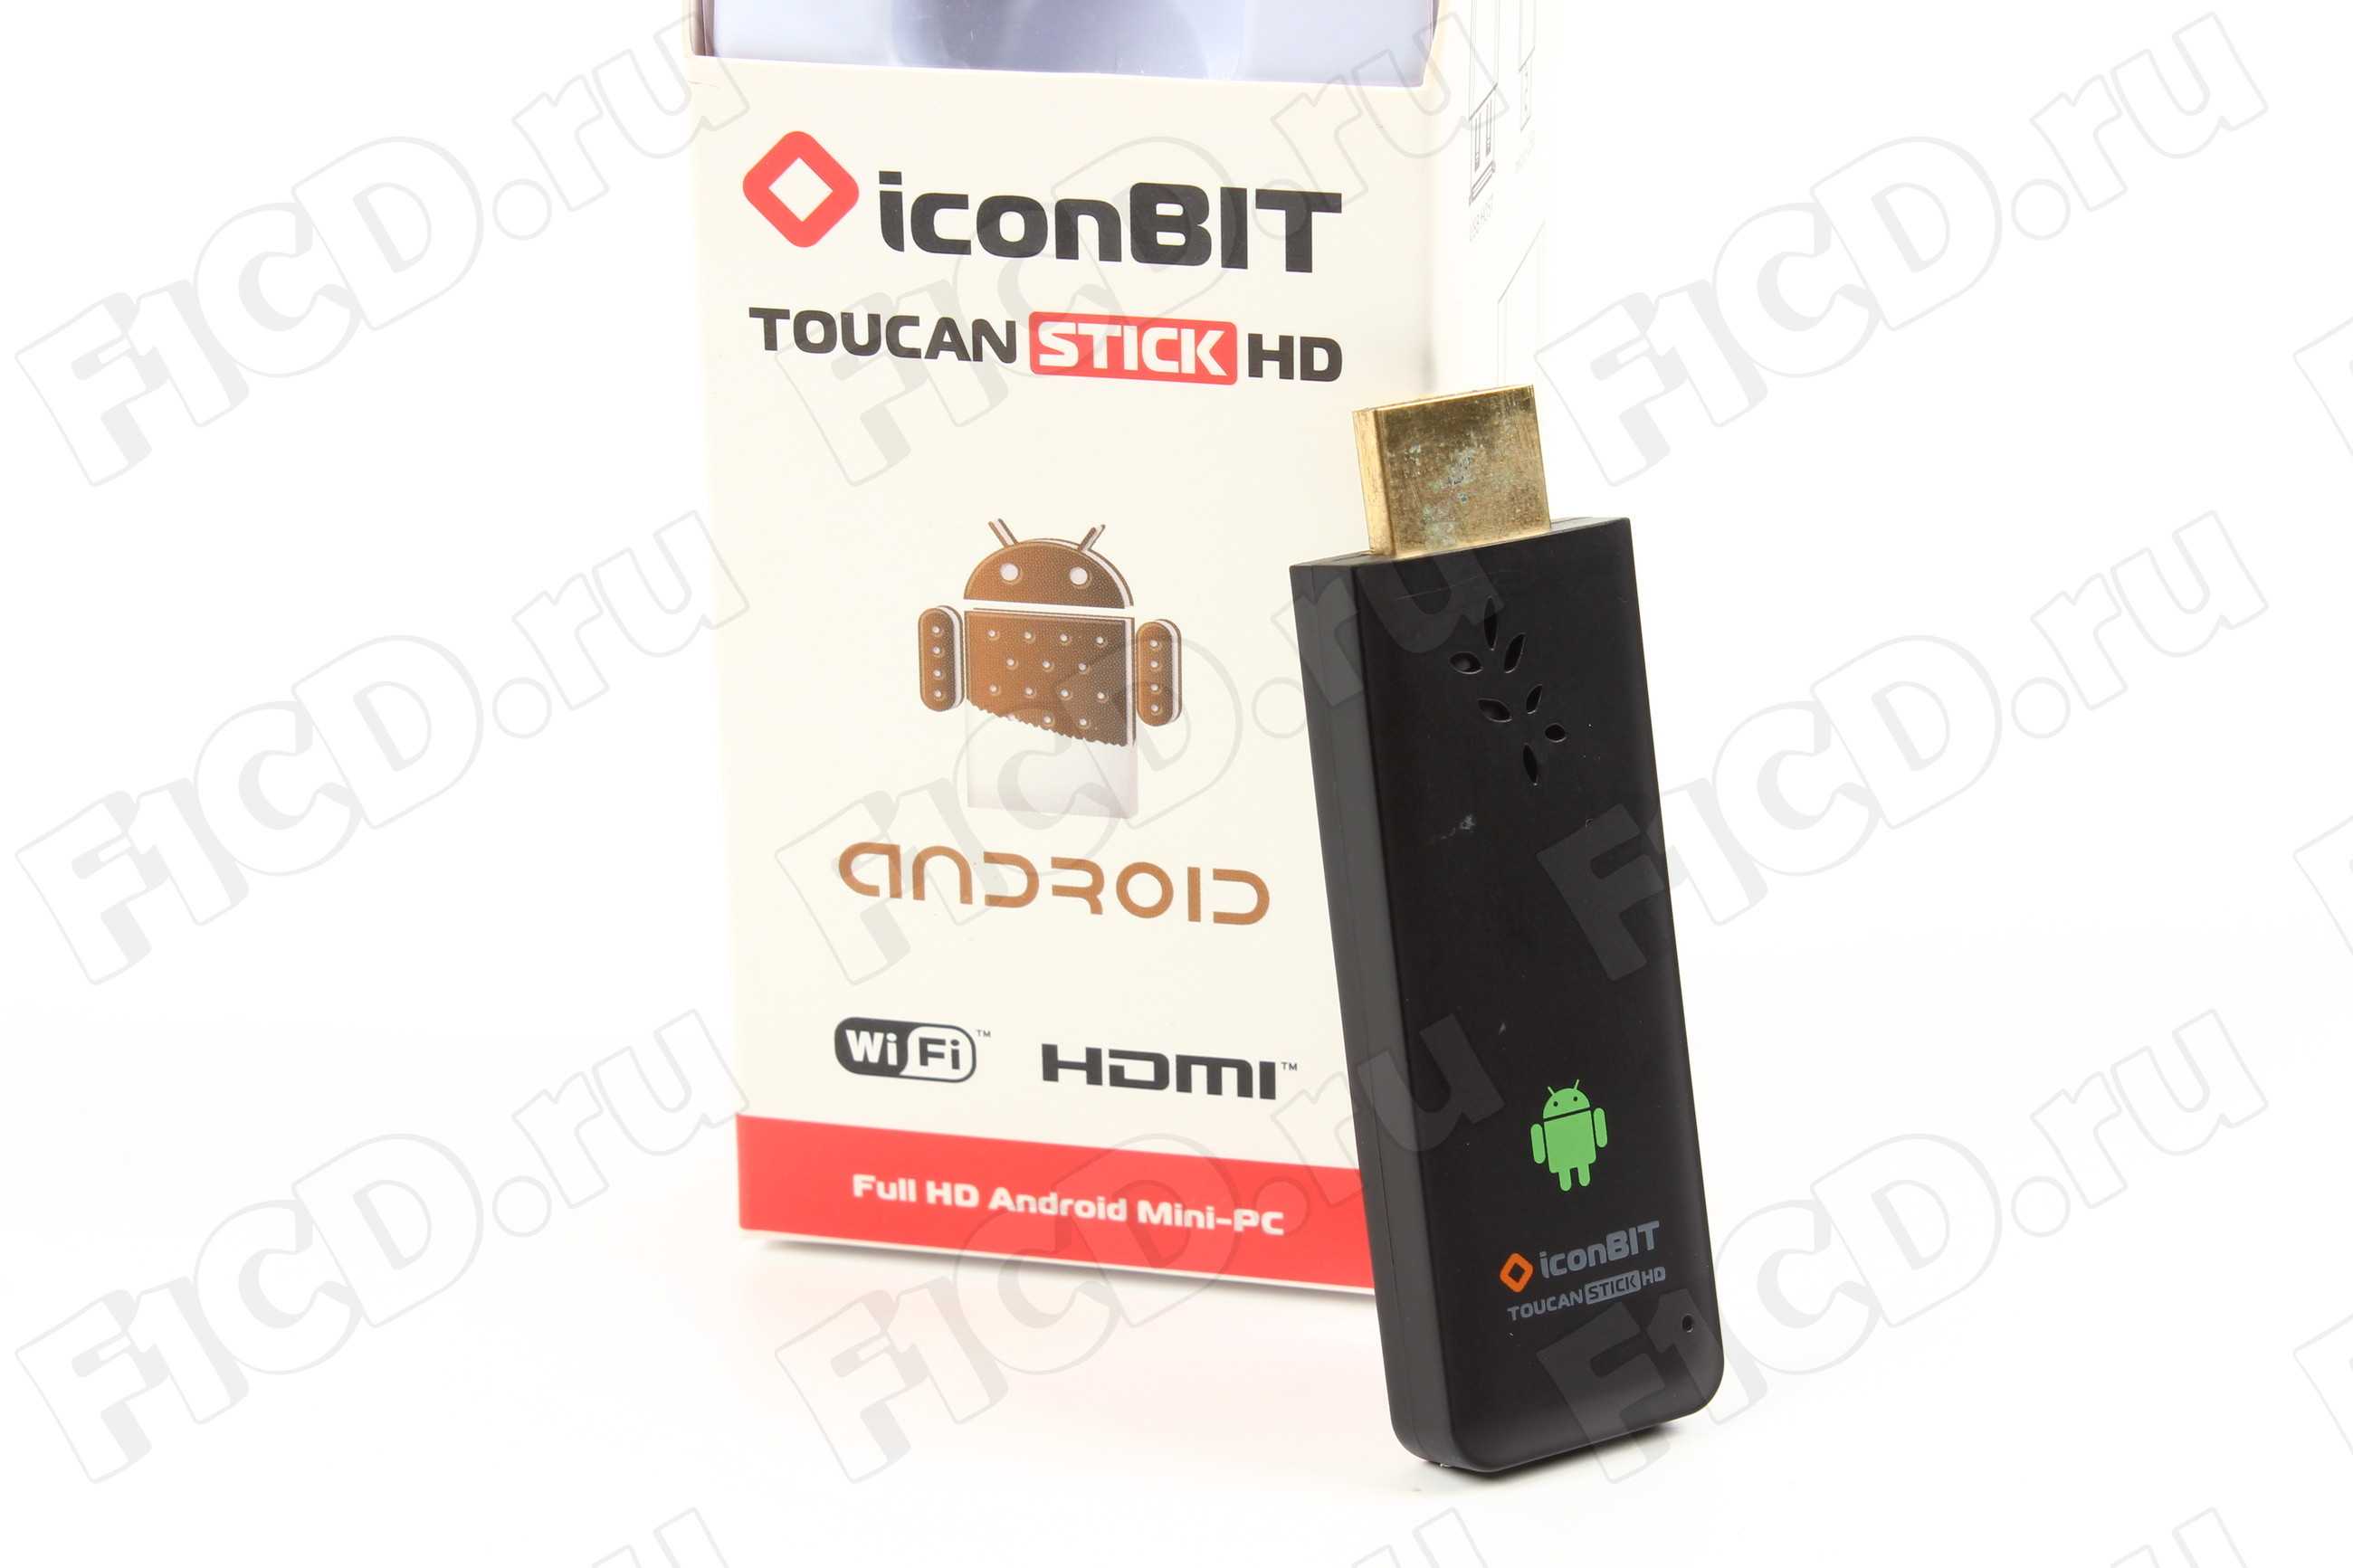 Iconbit toucan stick g2 - купить , скидки, цена, отзывы, обзор, характеристики - hd плееры